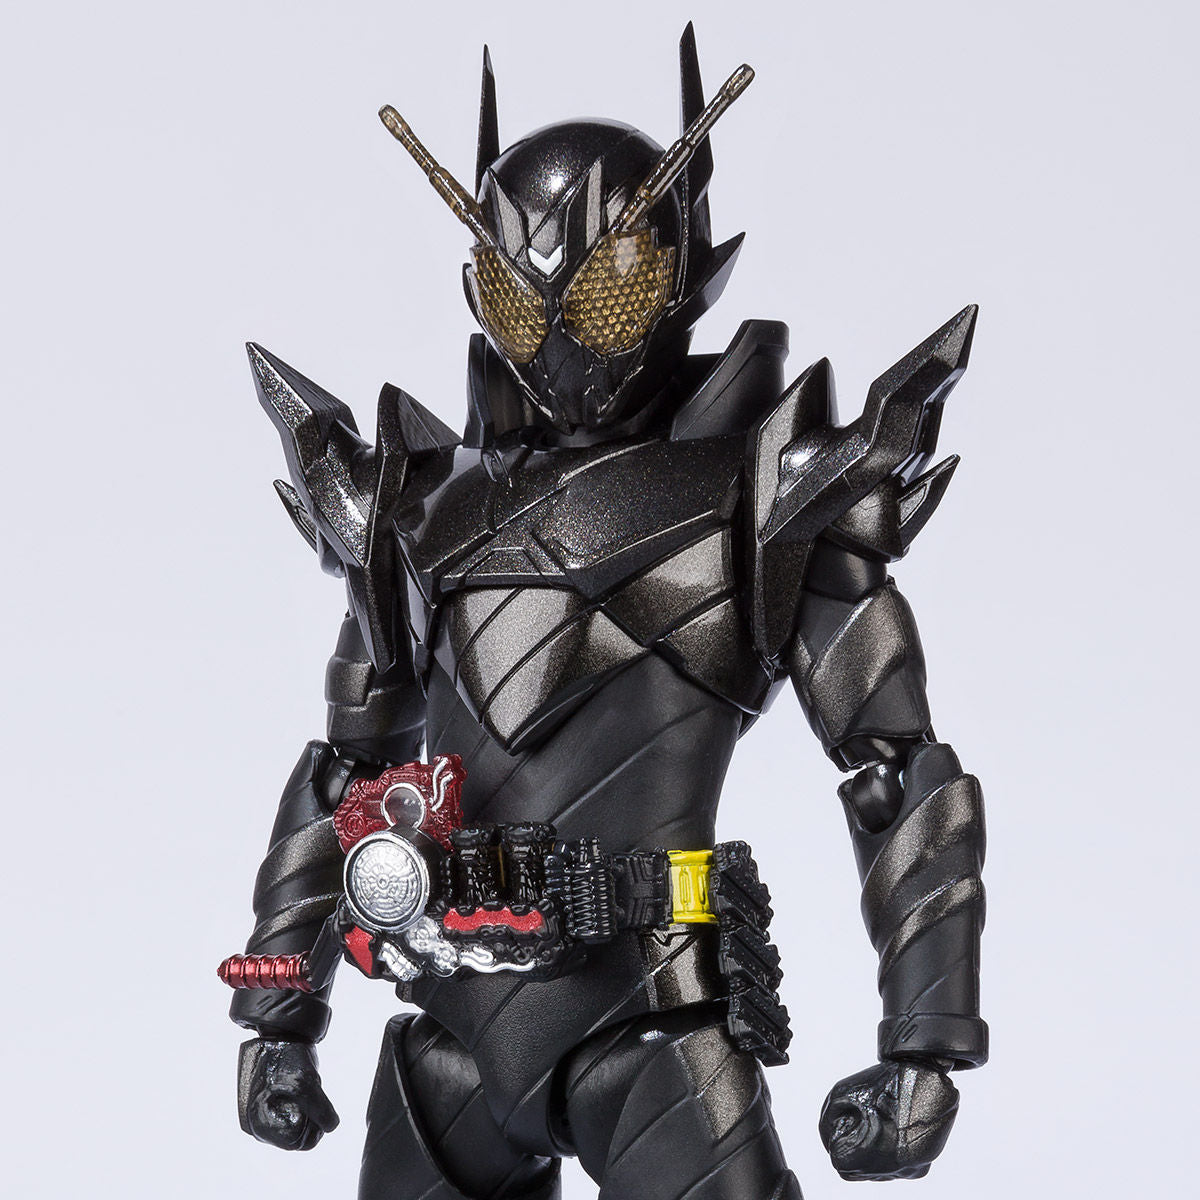 SH Figuarts Kamen Rider Metal Build